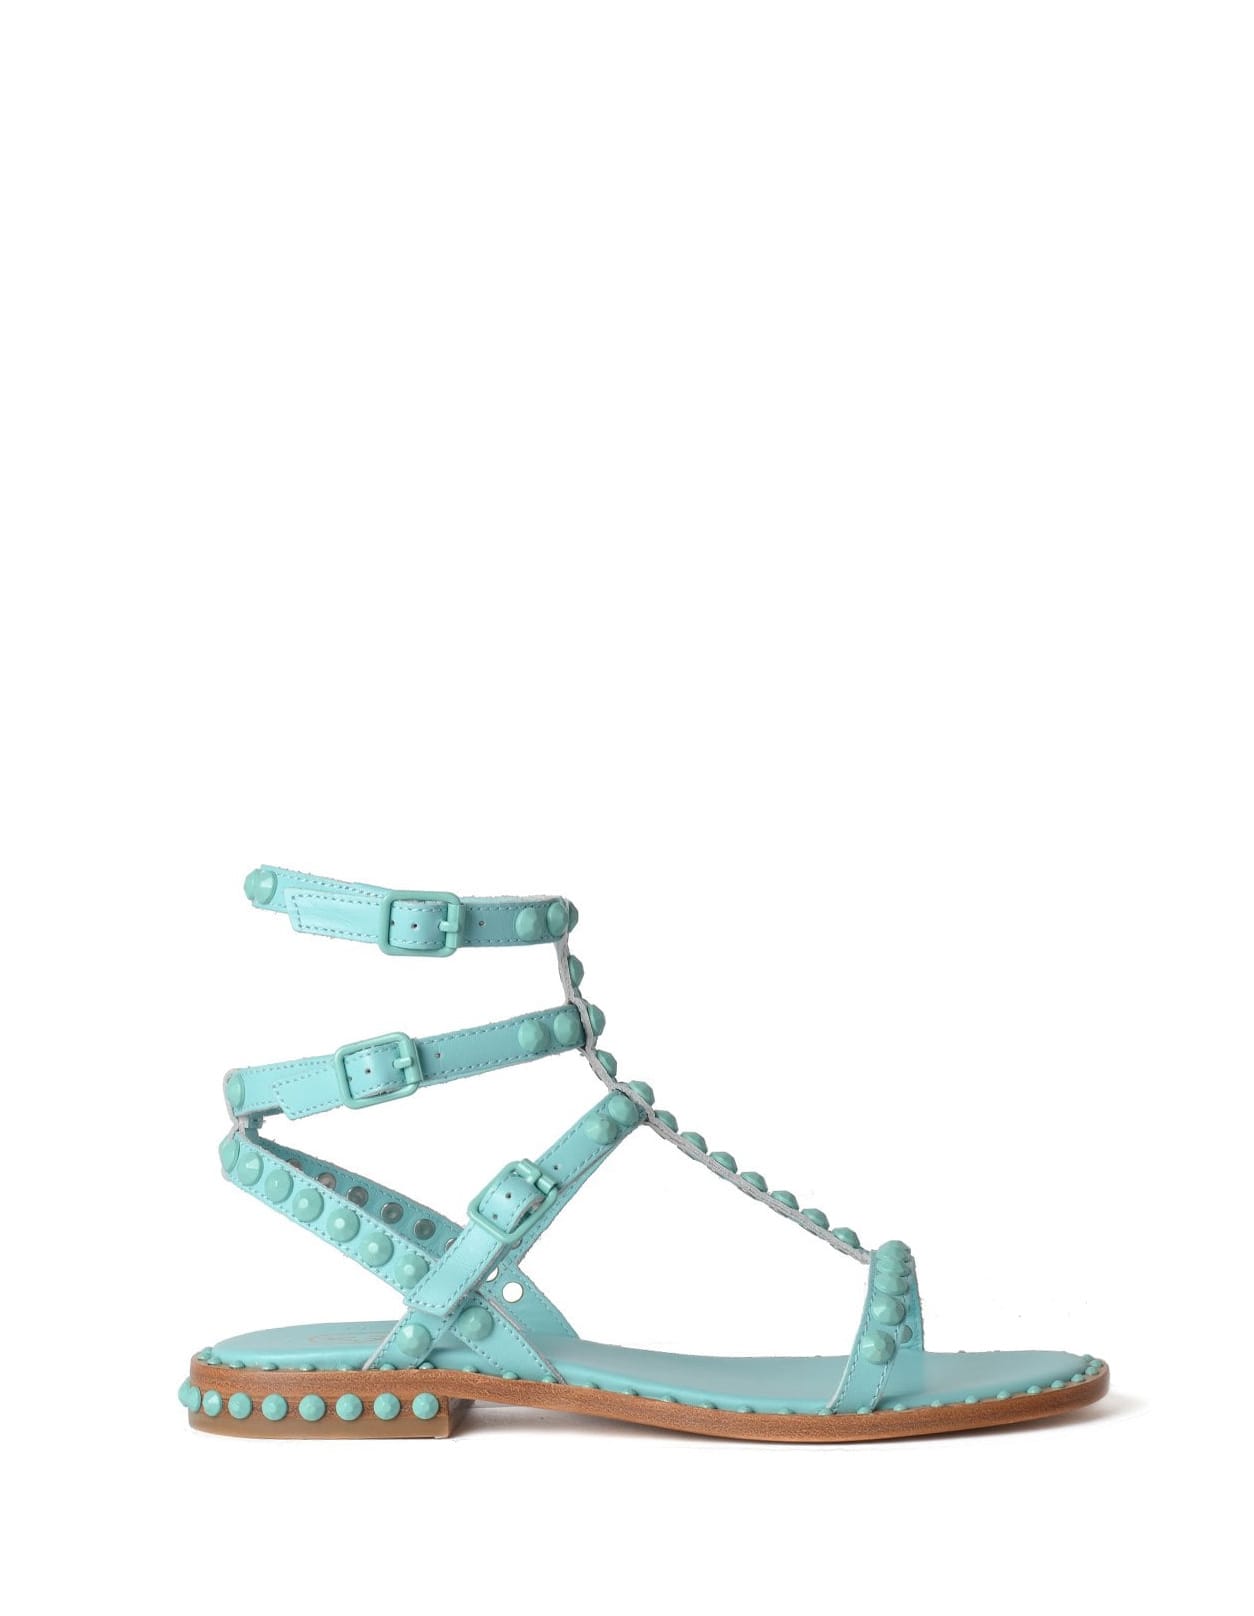 Aquamarine Playbis Sandals